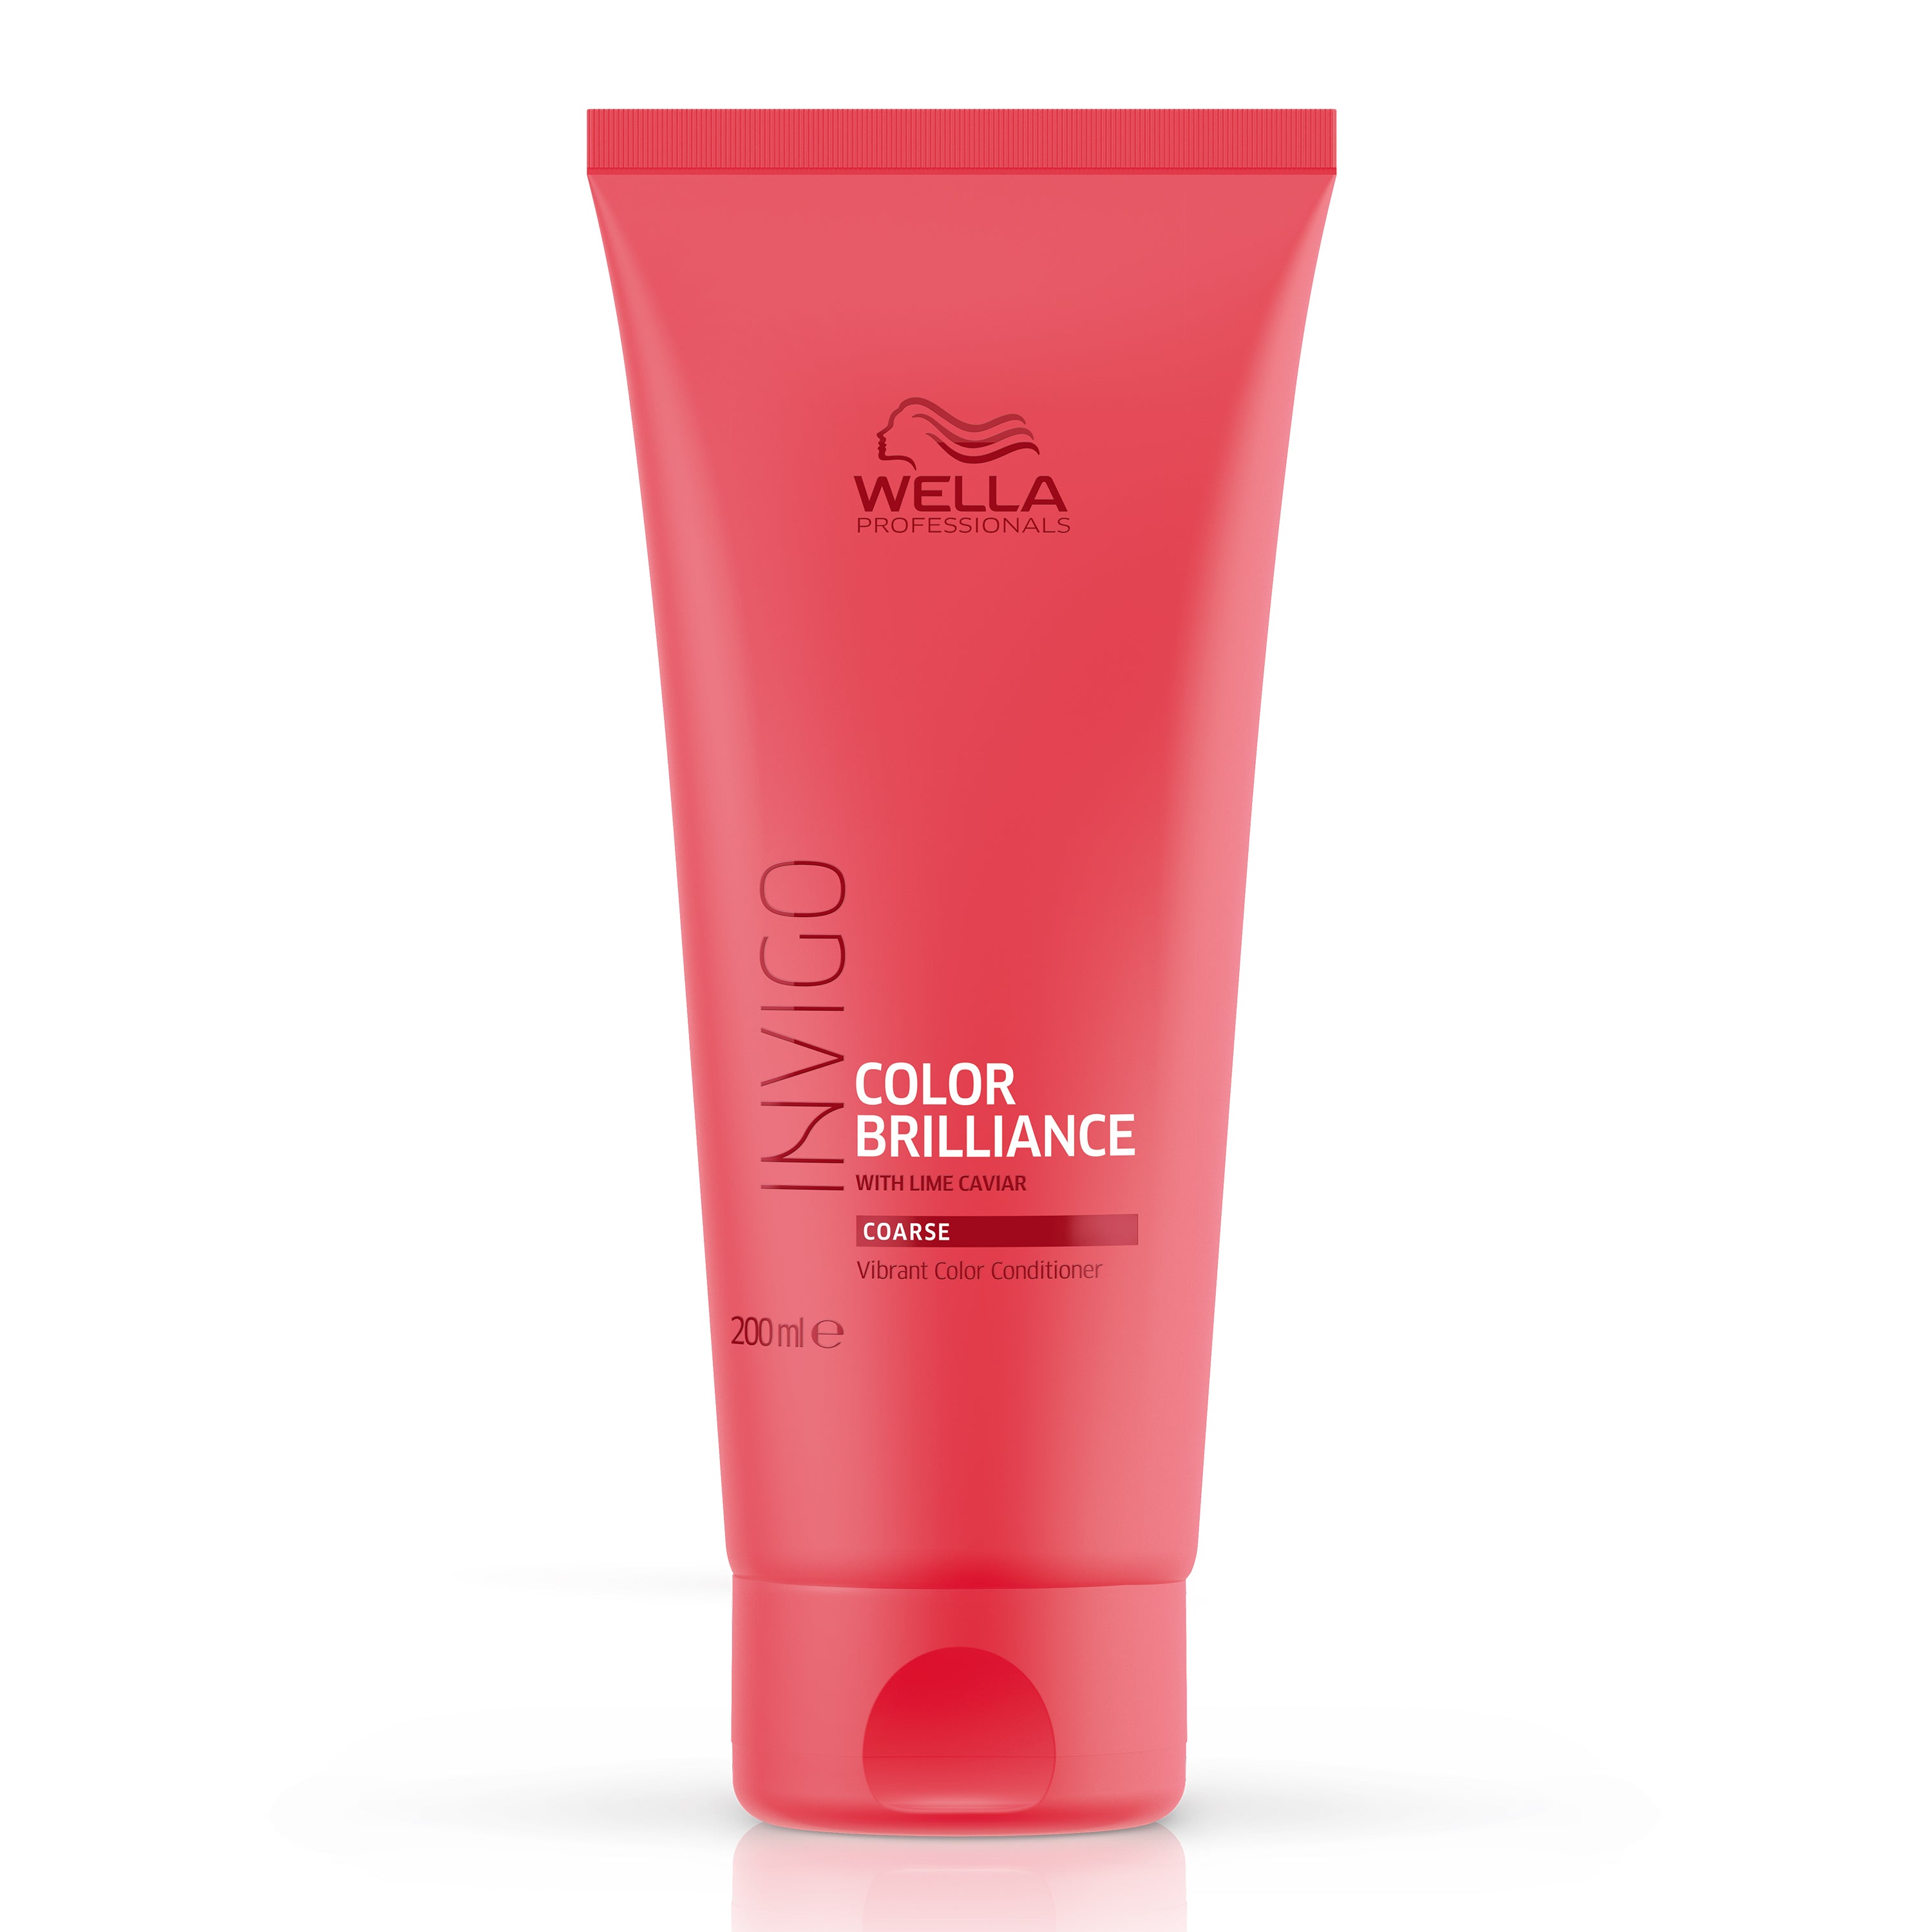 Wella Invigo Color Brilliance Shampoo 250ml & Conditioner 200ml Duo